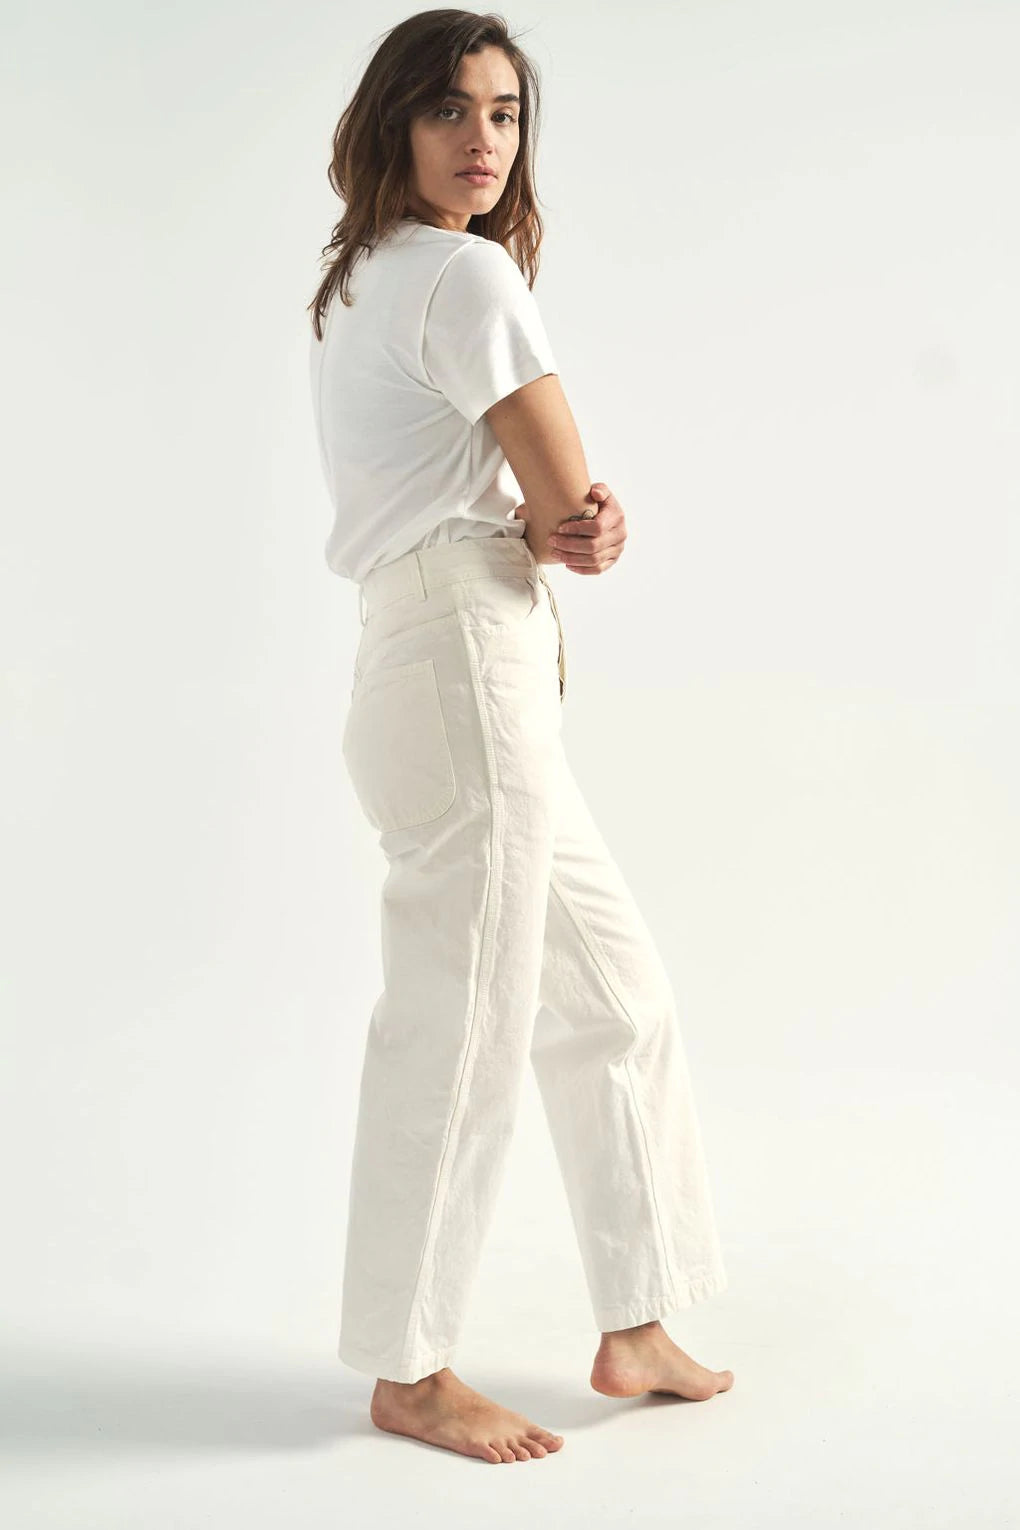 Jesse Kamm-Jesse Kamm Handy Pant-Jesse Kamm white pants-white handy pants Kamm-salt handy pants Kamm-Idun-St. Paul